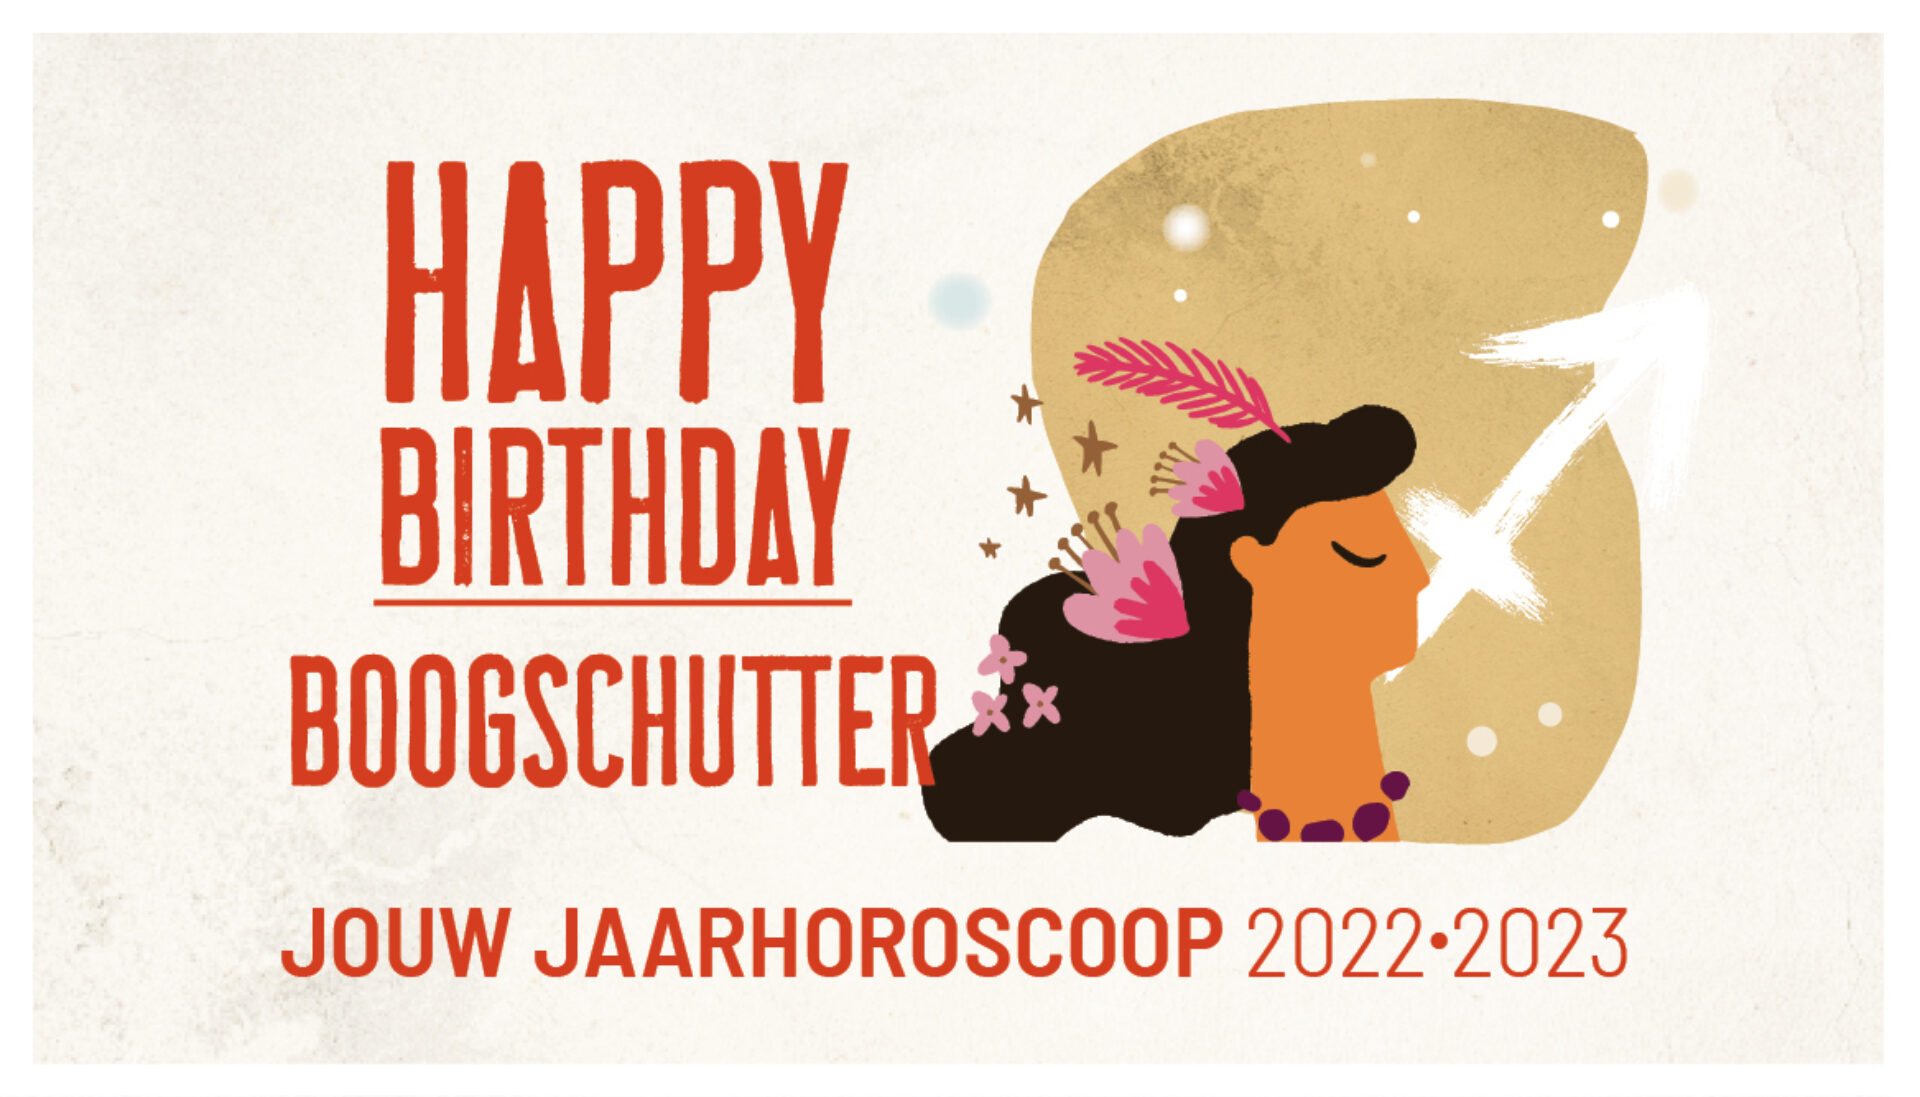 Boogschutter, jouw jaarhoroscoop 2022-2023: gelukkige verjaardag!